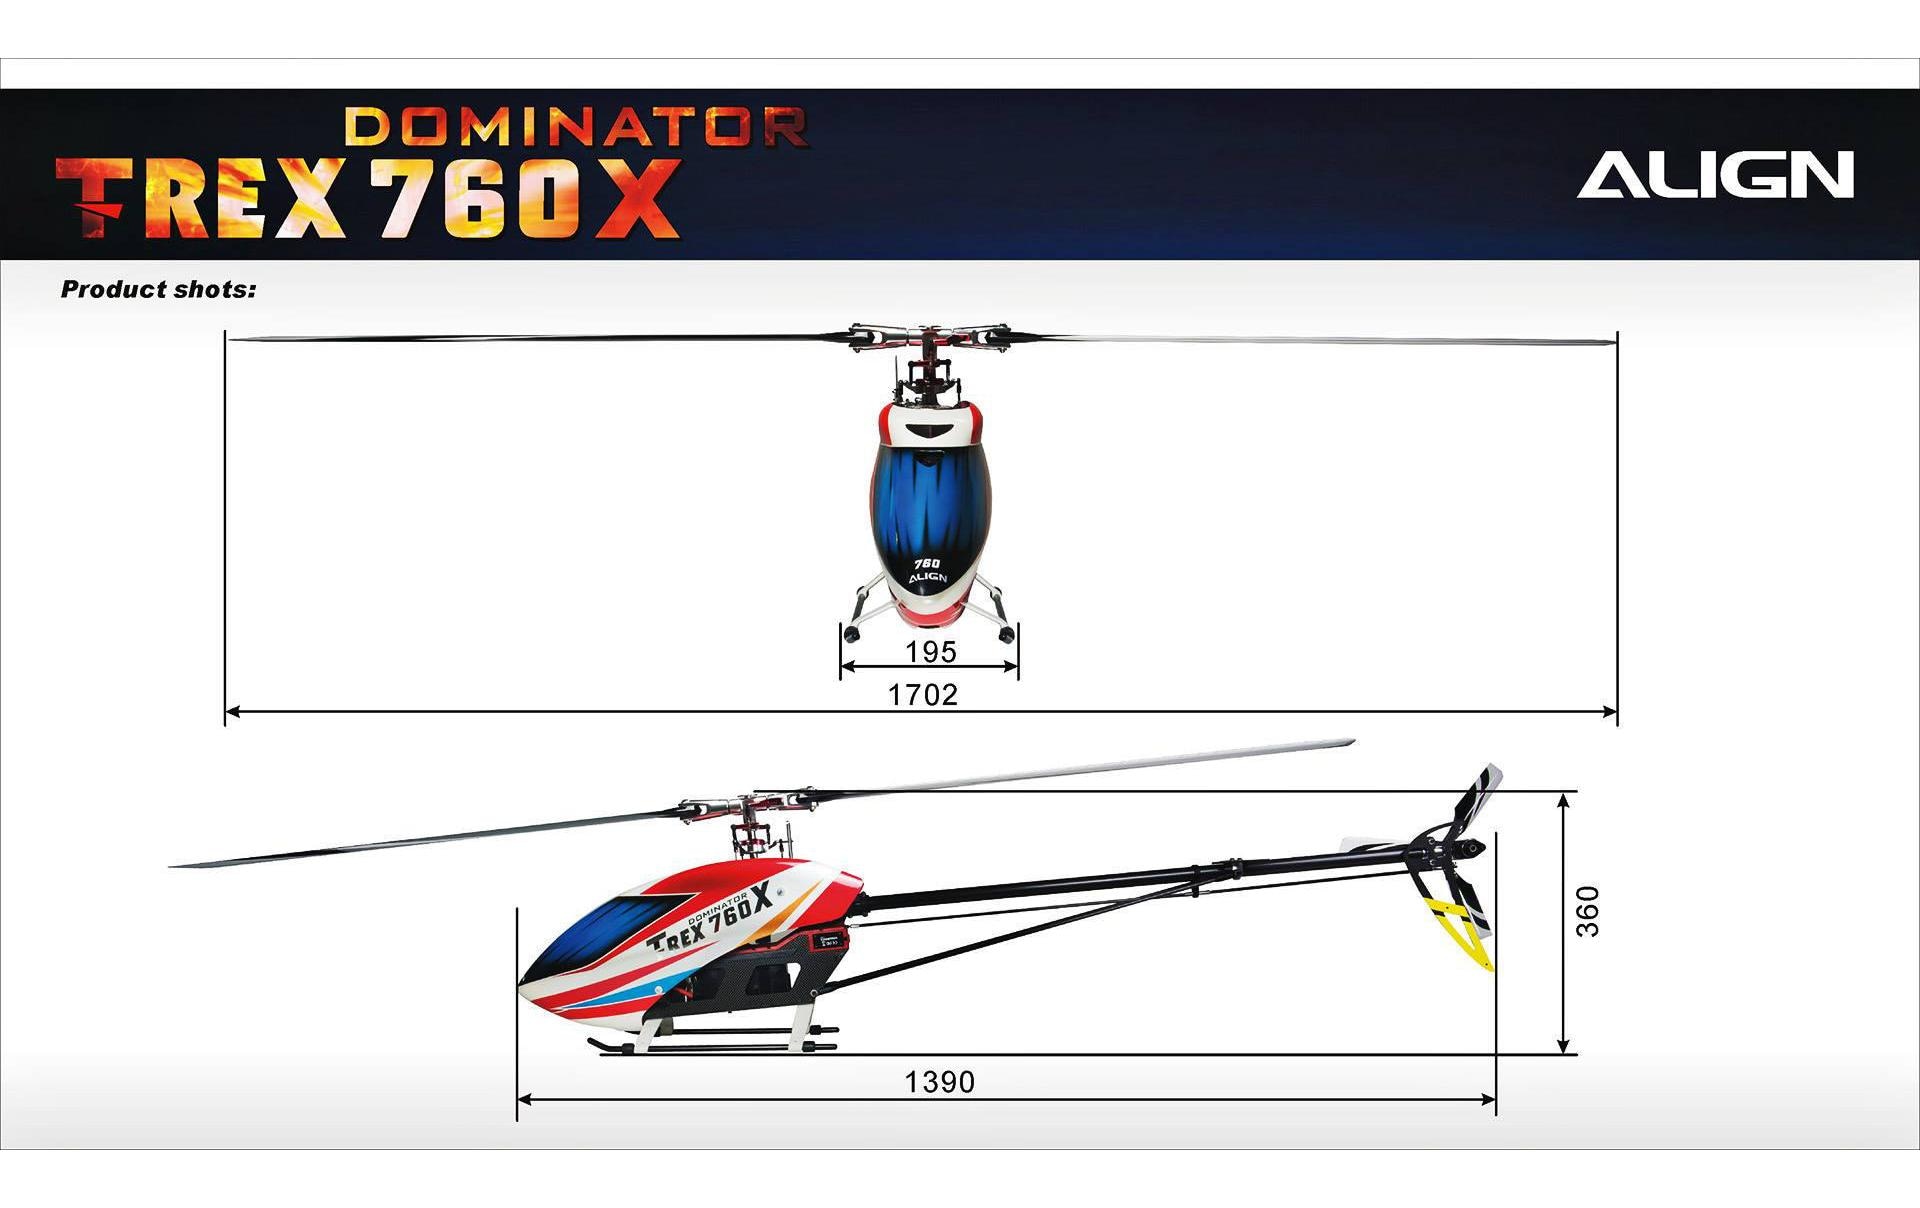 ALIGN Helikopter T-Rex 760X Dominator TOP Super Combo